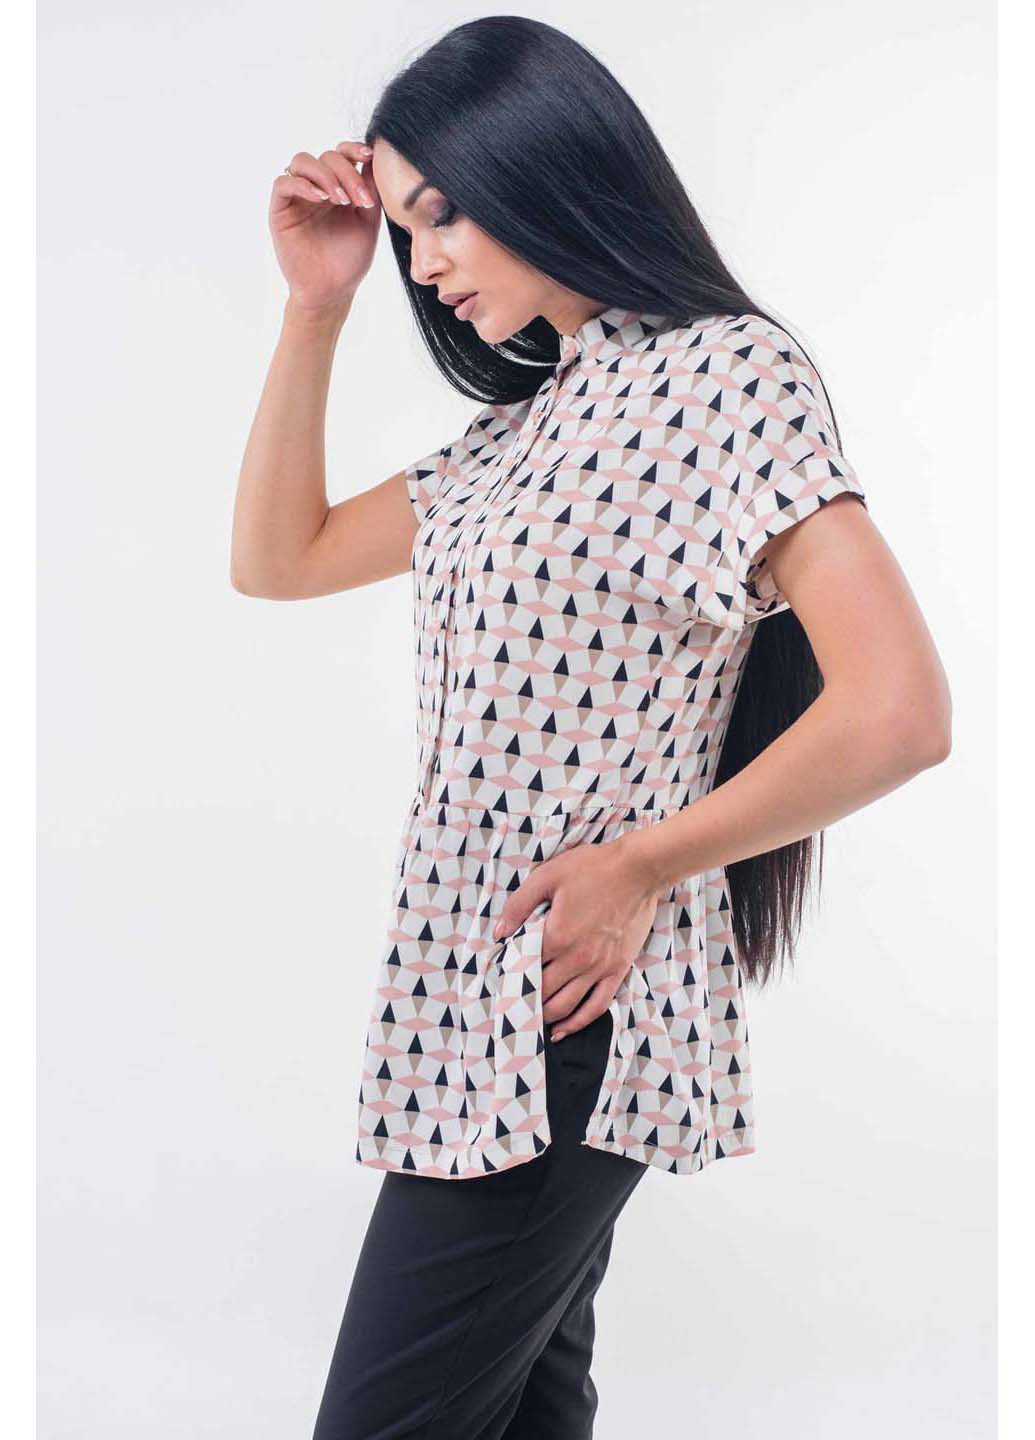 Комбинированная демисезонная блуза Ри Мари